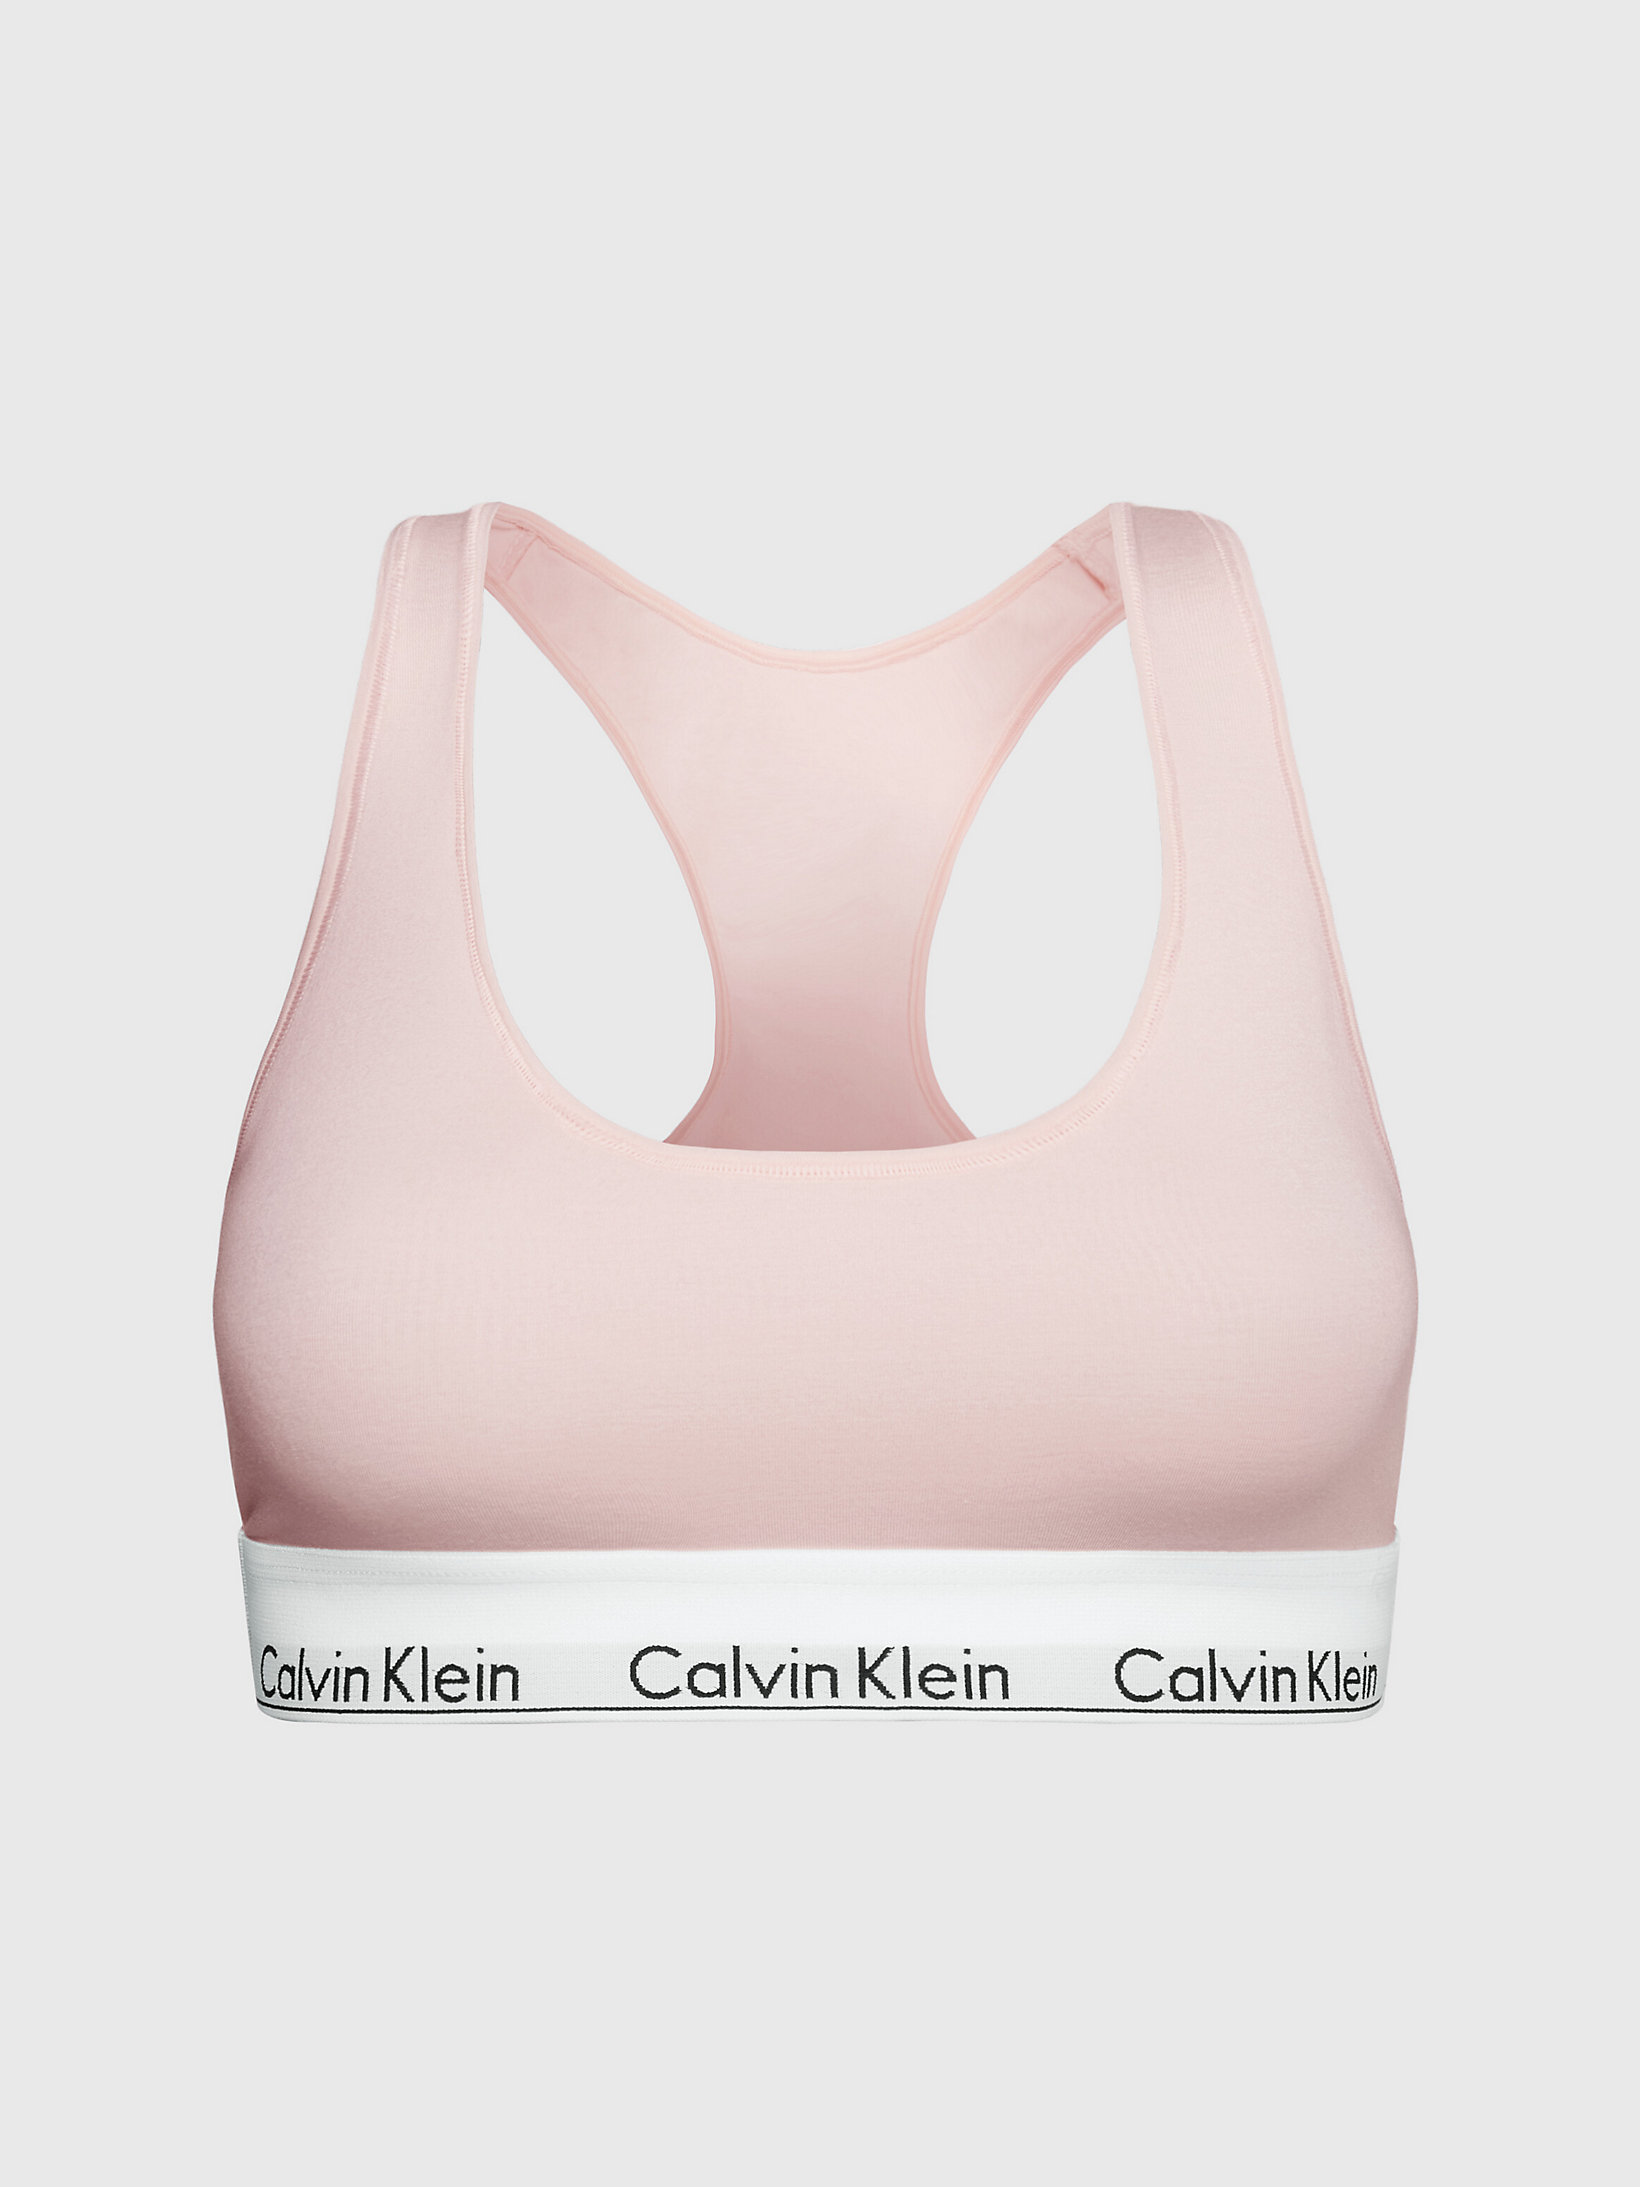 Brassière - Modern Cotton > Nymphs Thigh > undefined femmes > Calvin Klein